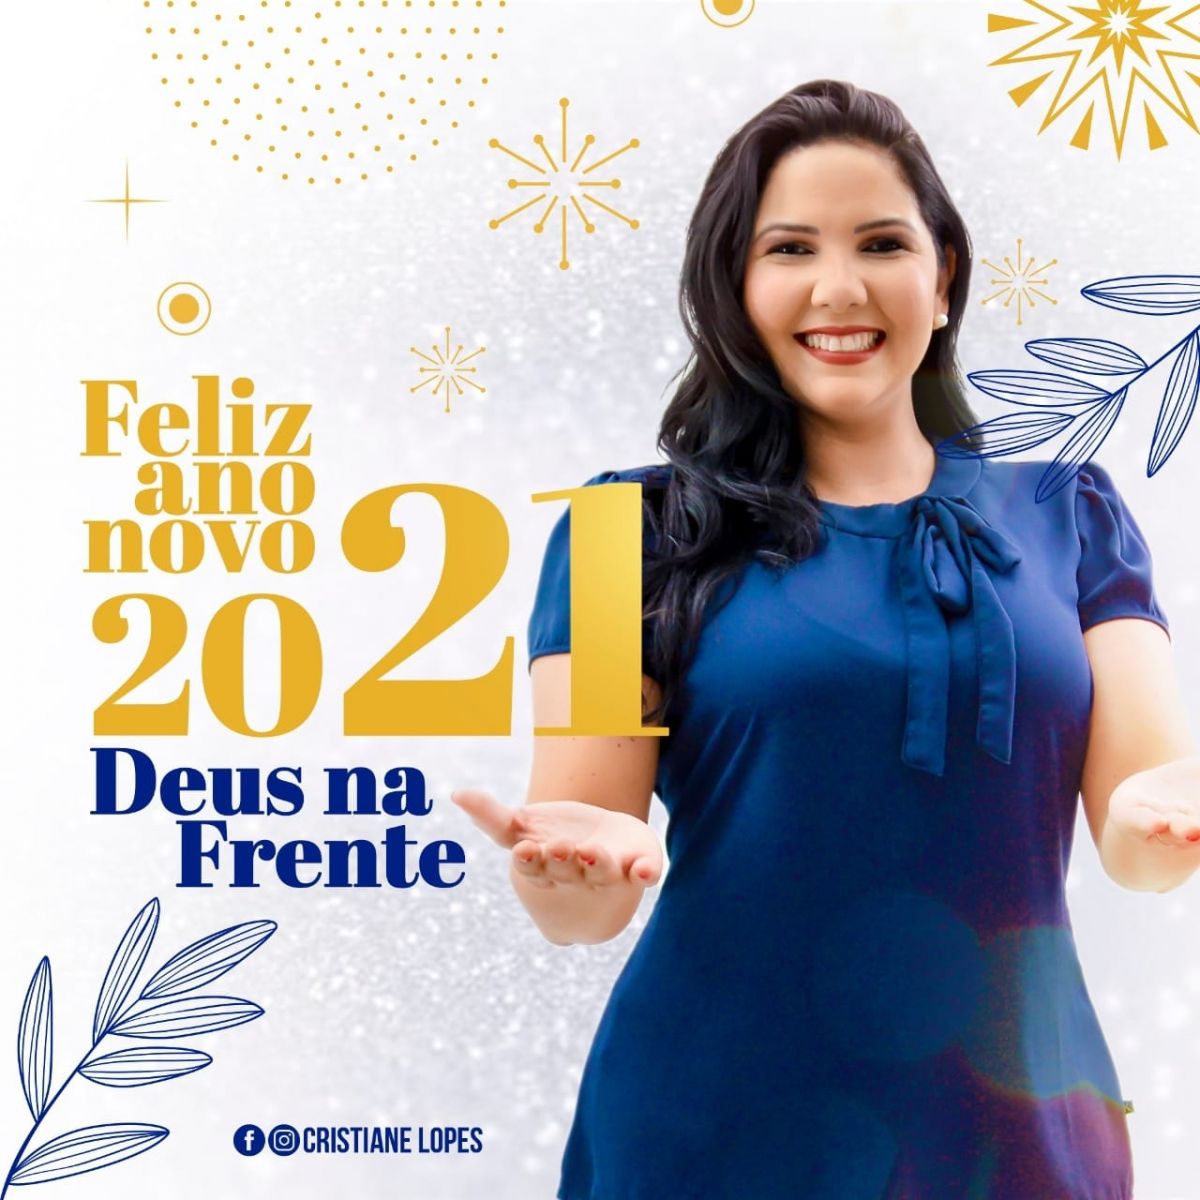 FELIZ ANO NOVO: MENSAGEM DE CRISTIANE LOPES - News Rondônia